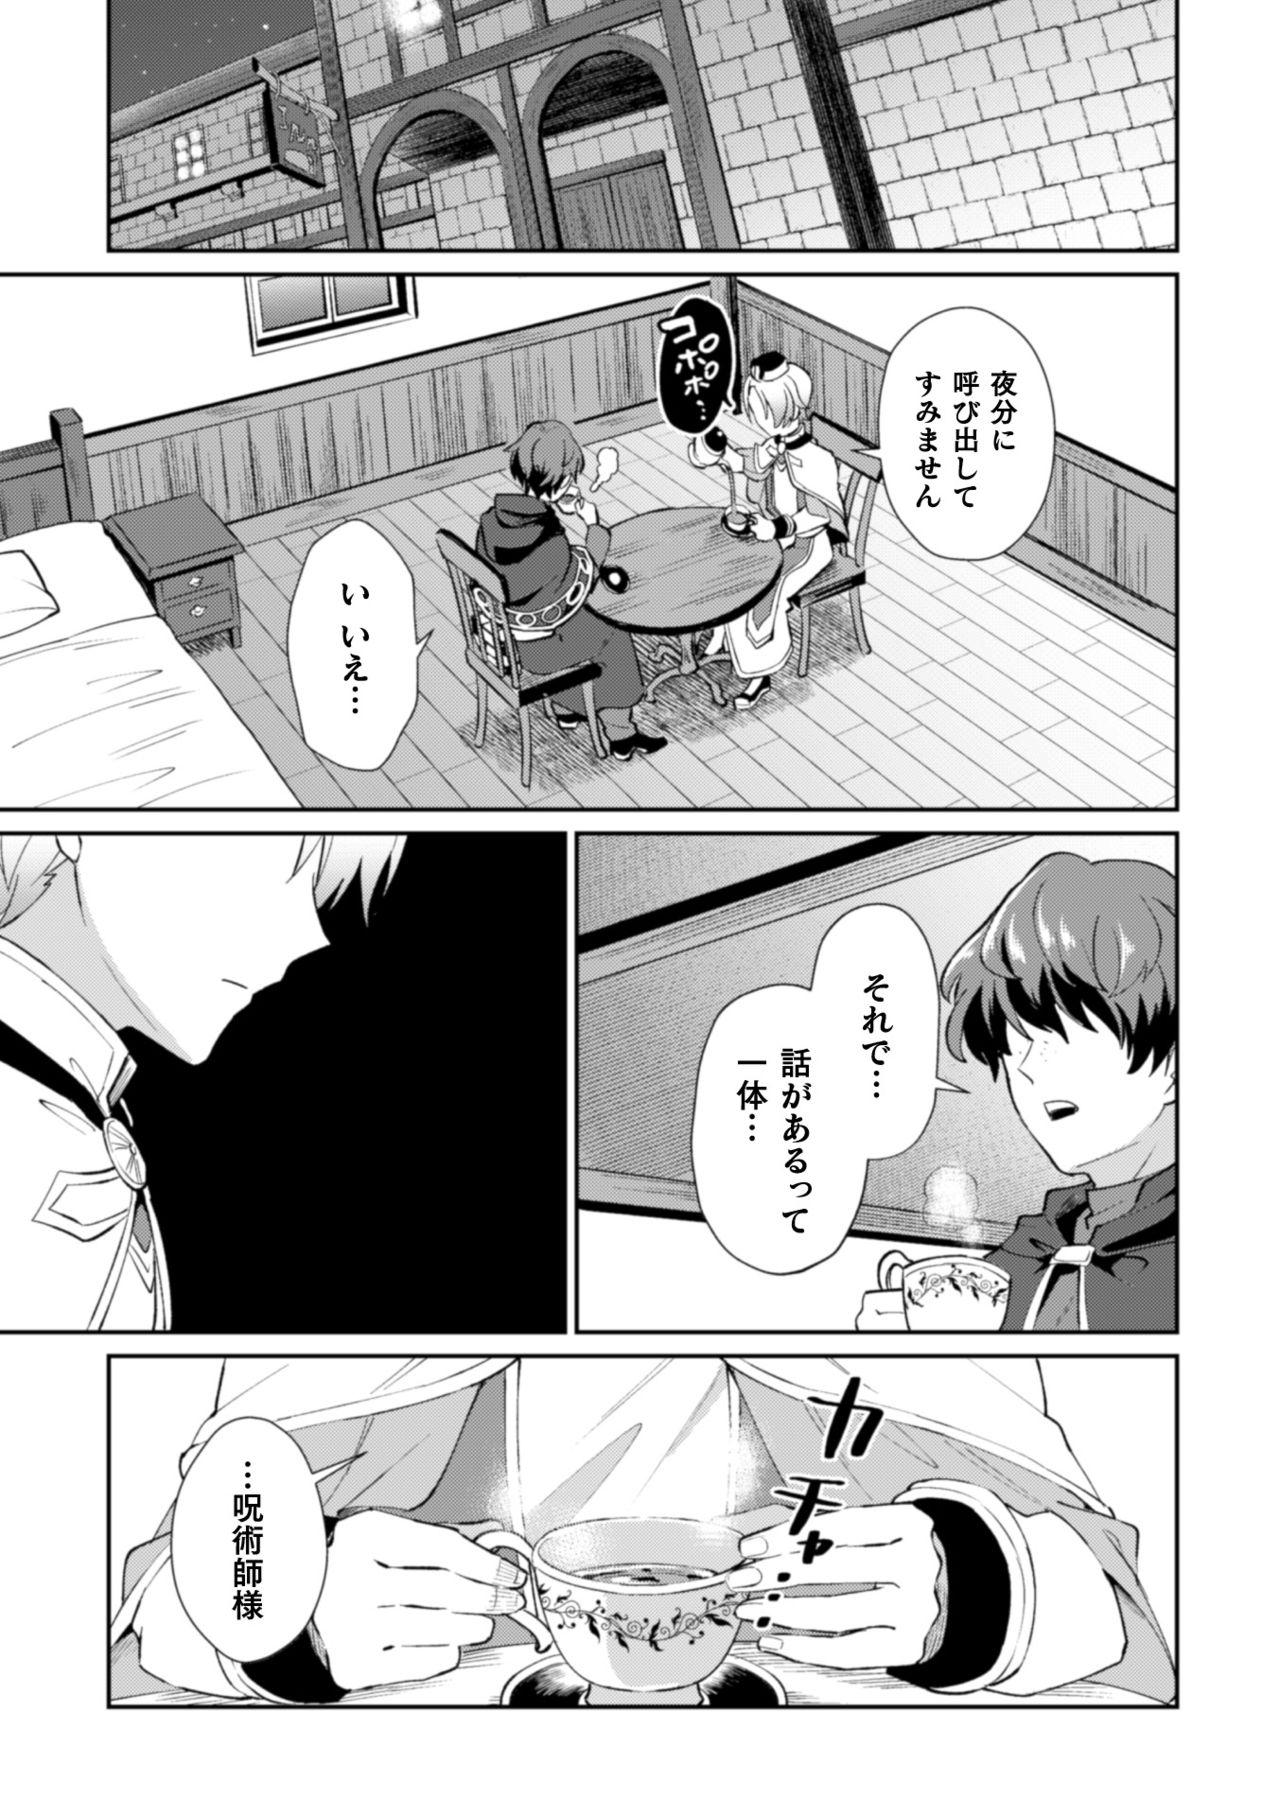 Str8 Kinju no Madousho2 Shinkan-san wa saimin mahō de dankon ni tsukaeru yorokobi o shiru - Original Lesbiansex - Page 5